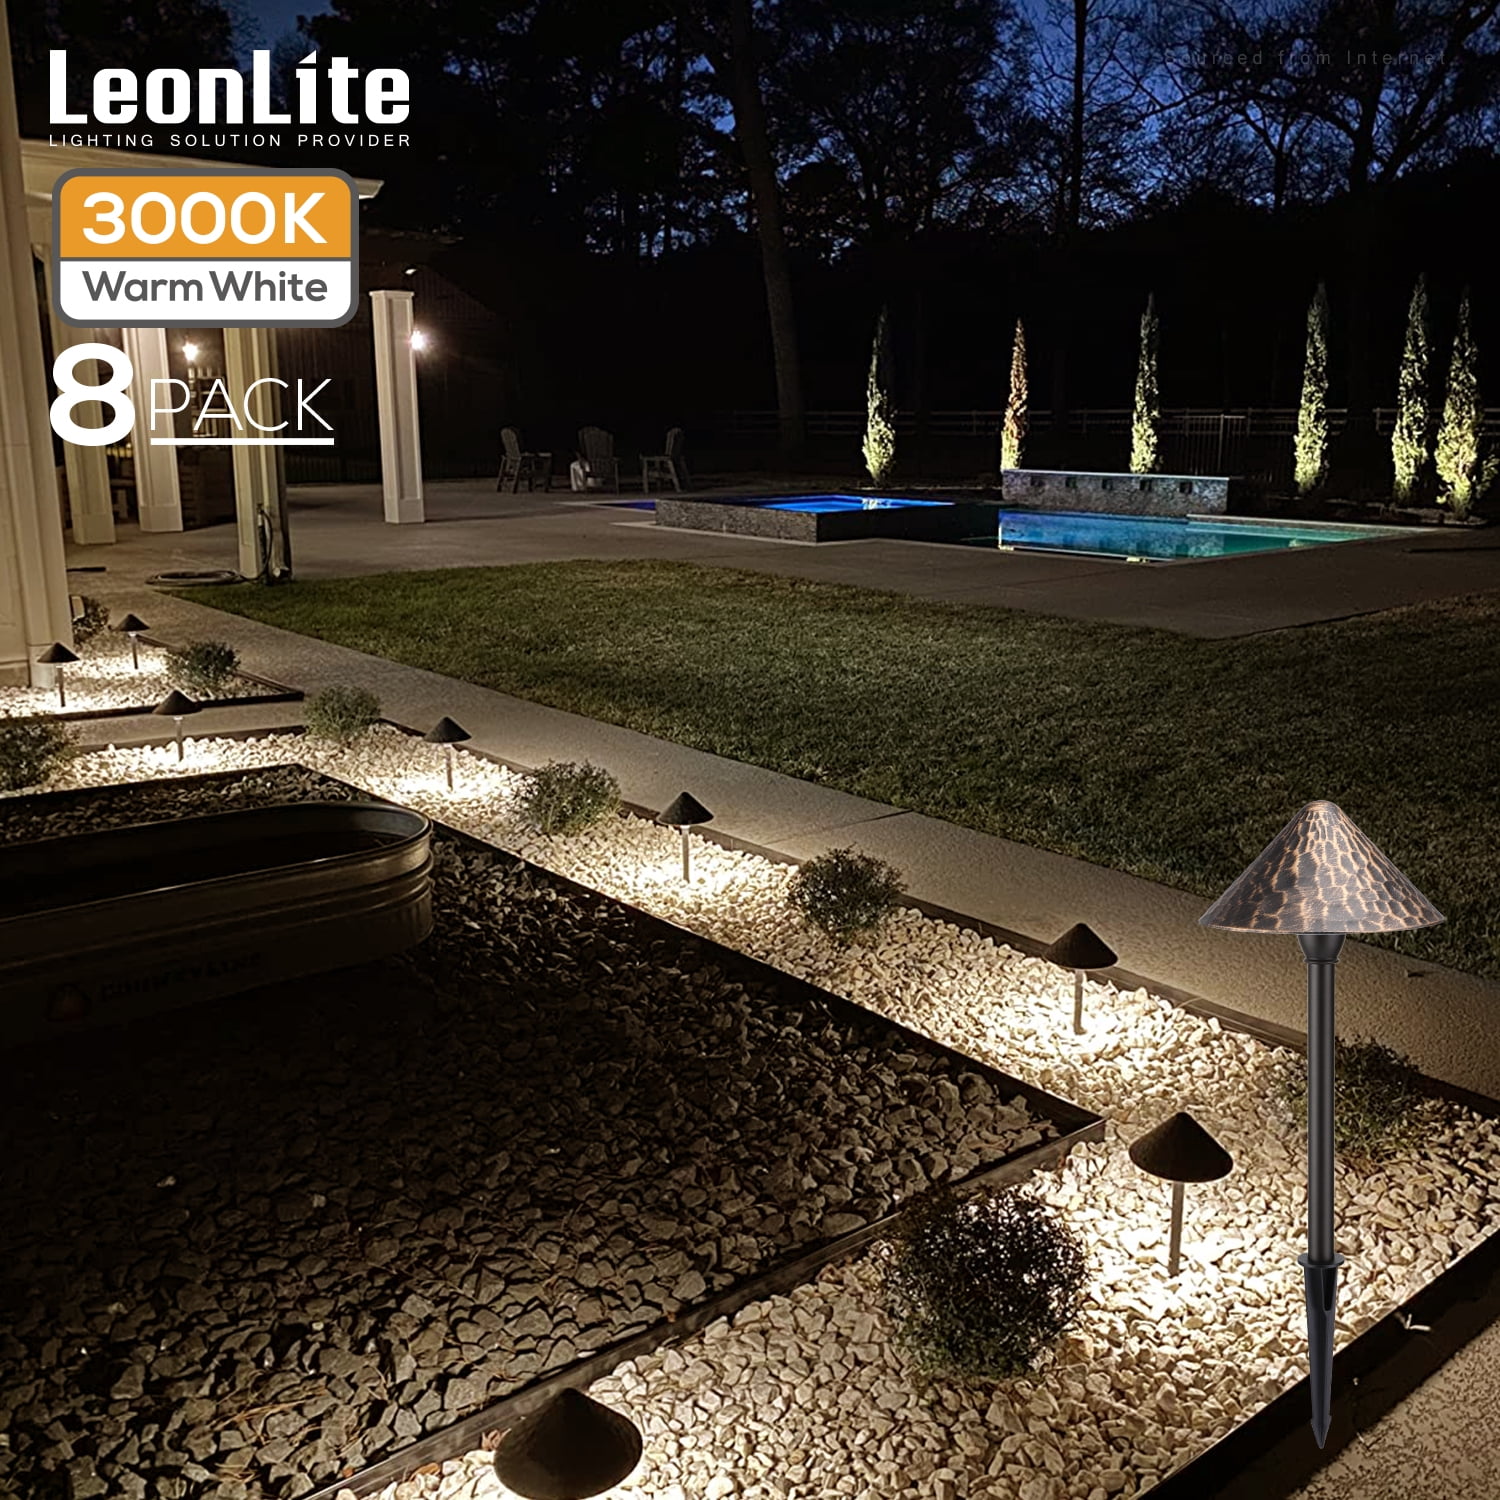 LEONLITE Pack Low Voltage LED Landscape Lighting, 12-24V AC/DC Wired LED  Pathway Lighting, Unique Vintage Golden Texture, Aluminum